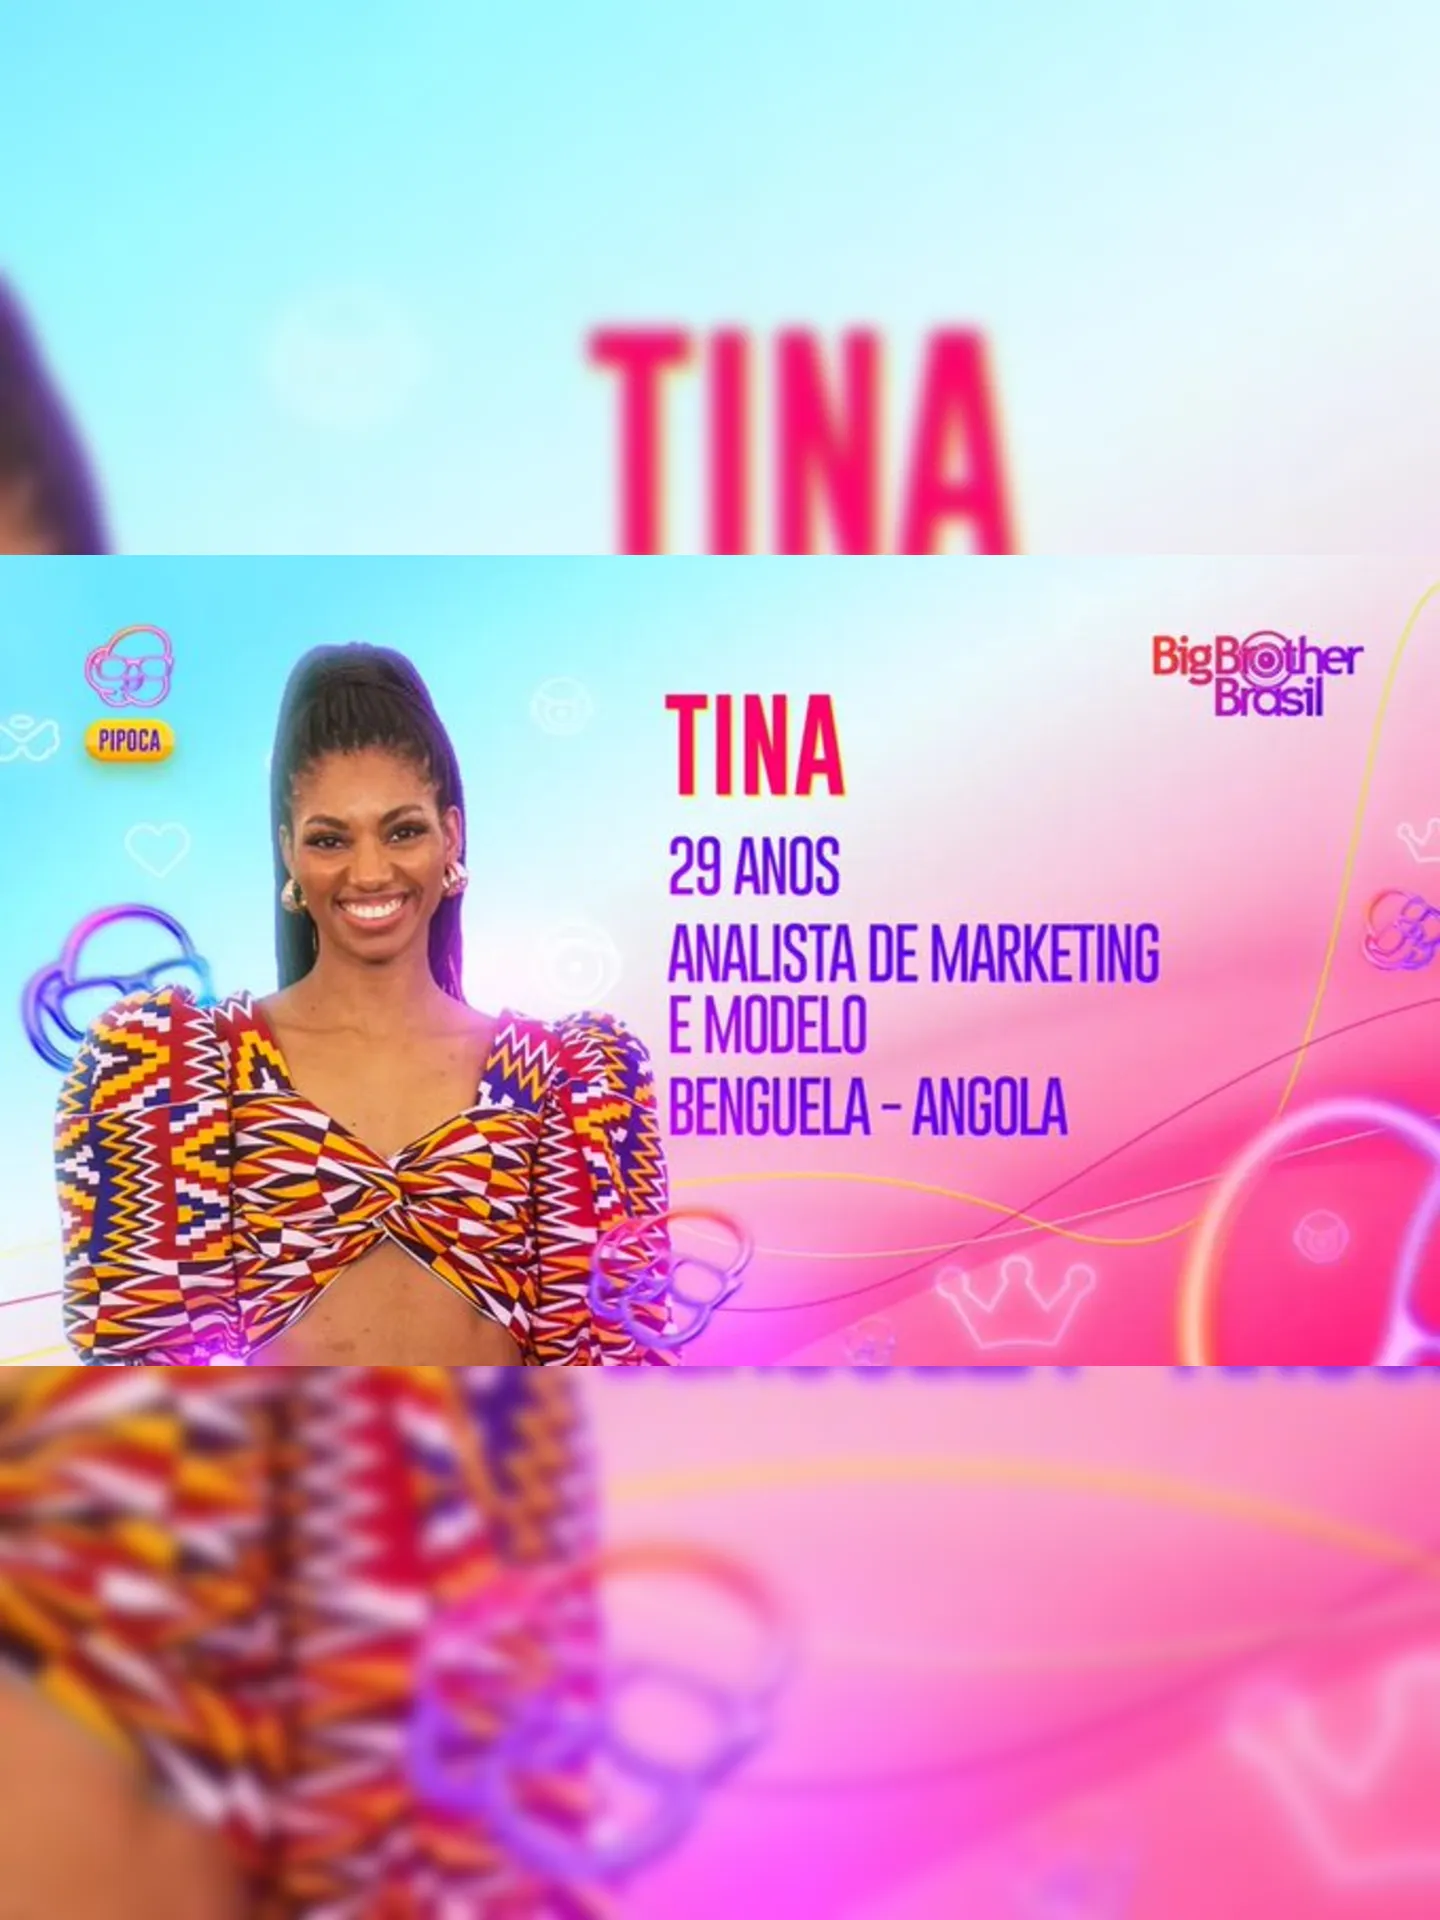 Tina nasceu em Angola e é modelo e analista de marketing